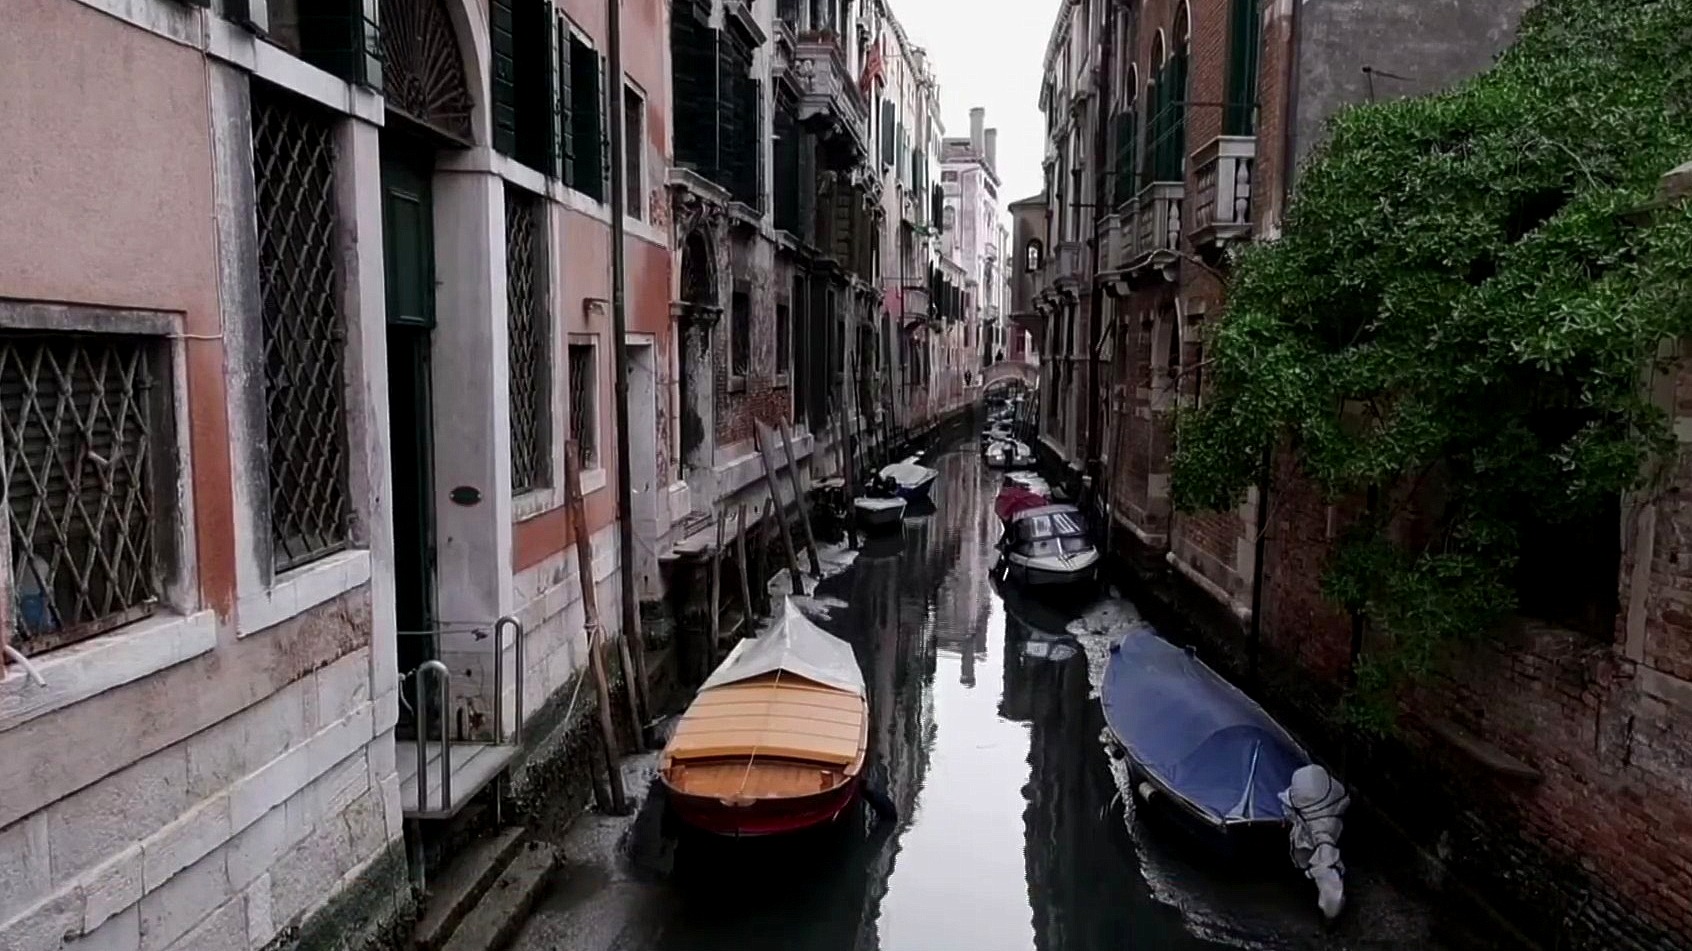 marea baja deja vacios los canales de venecia italia